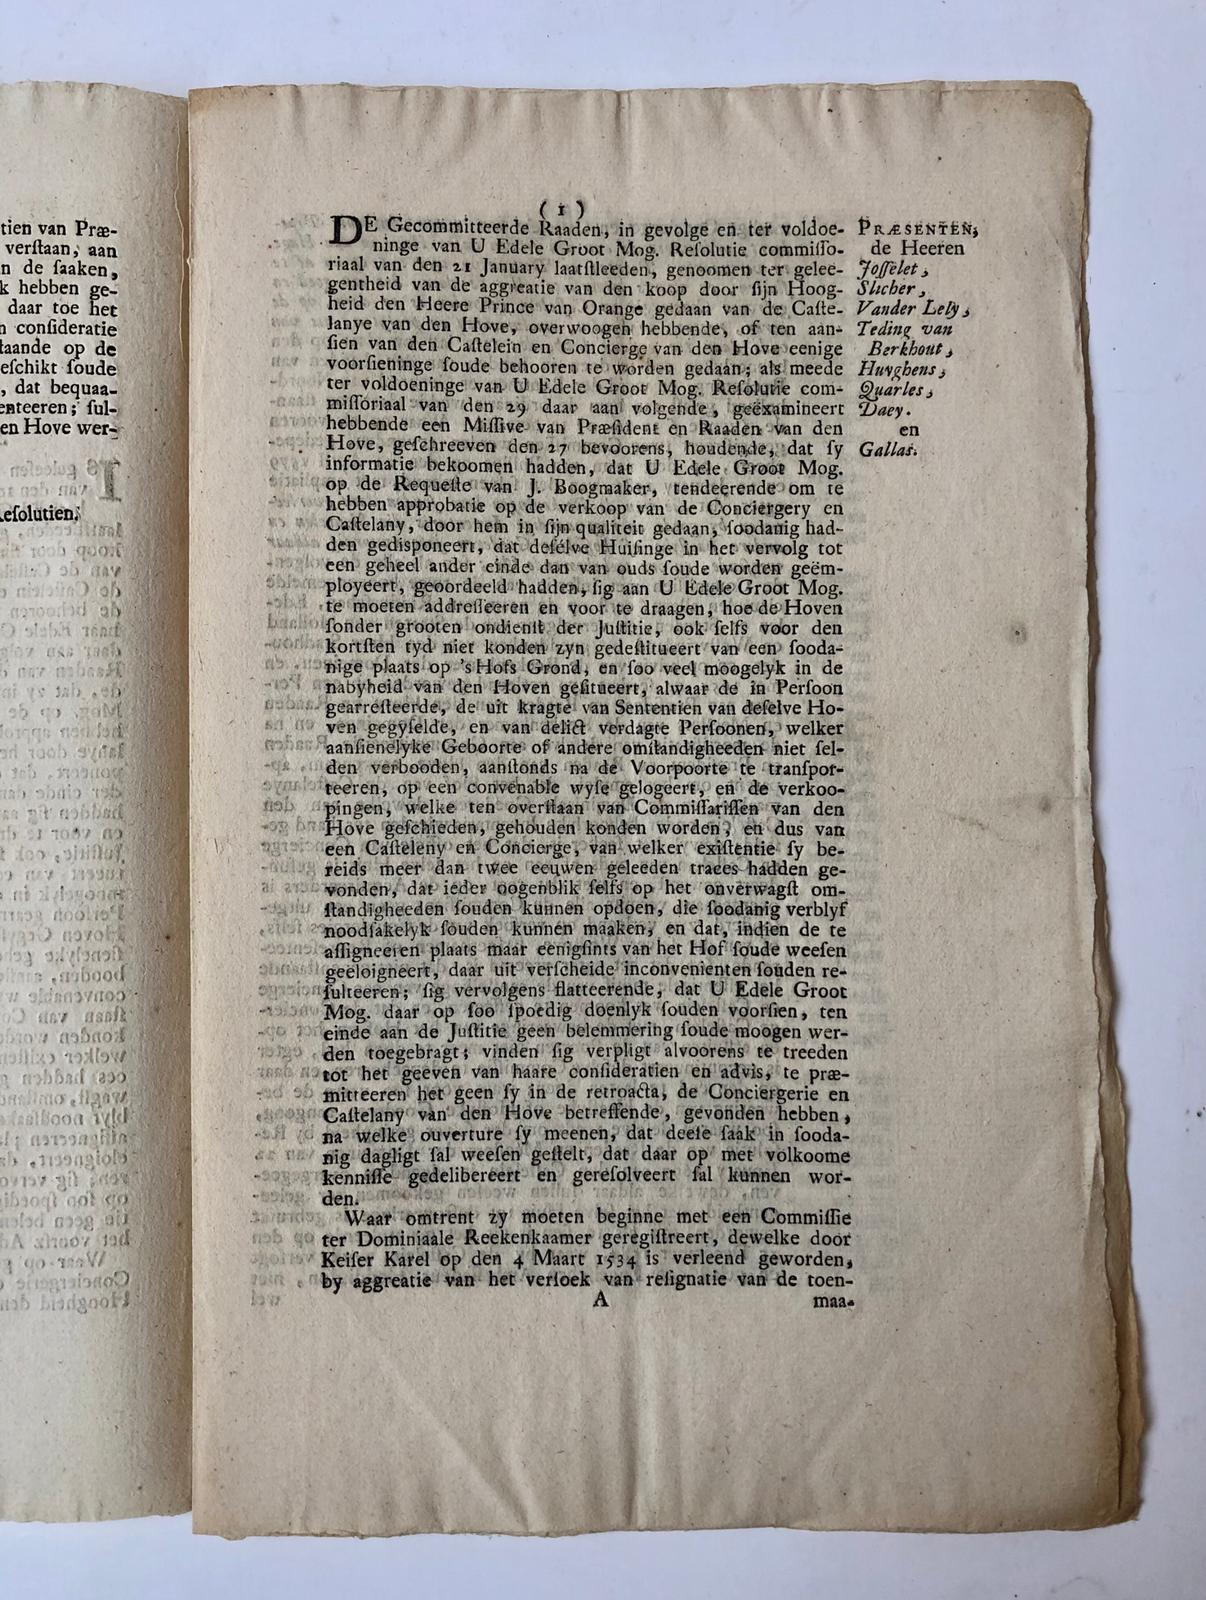 [Printed publication] BOOGMAKER; BINNENHOF 'S-GRAVENHAGE --- Extract resolutien Staten van Holland 28-2-1767 betr. de castelanye van het Hof van Holland. Gedrukt, folio, 5 pag.